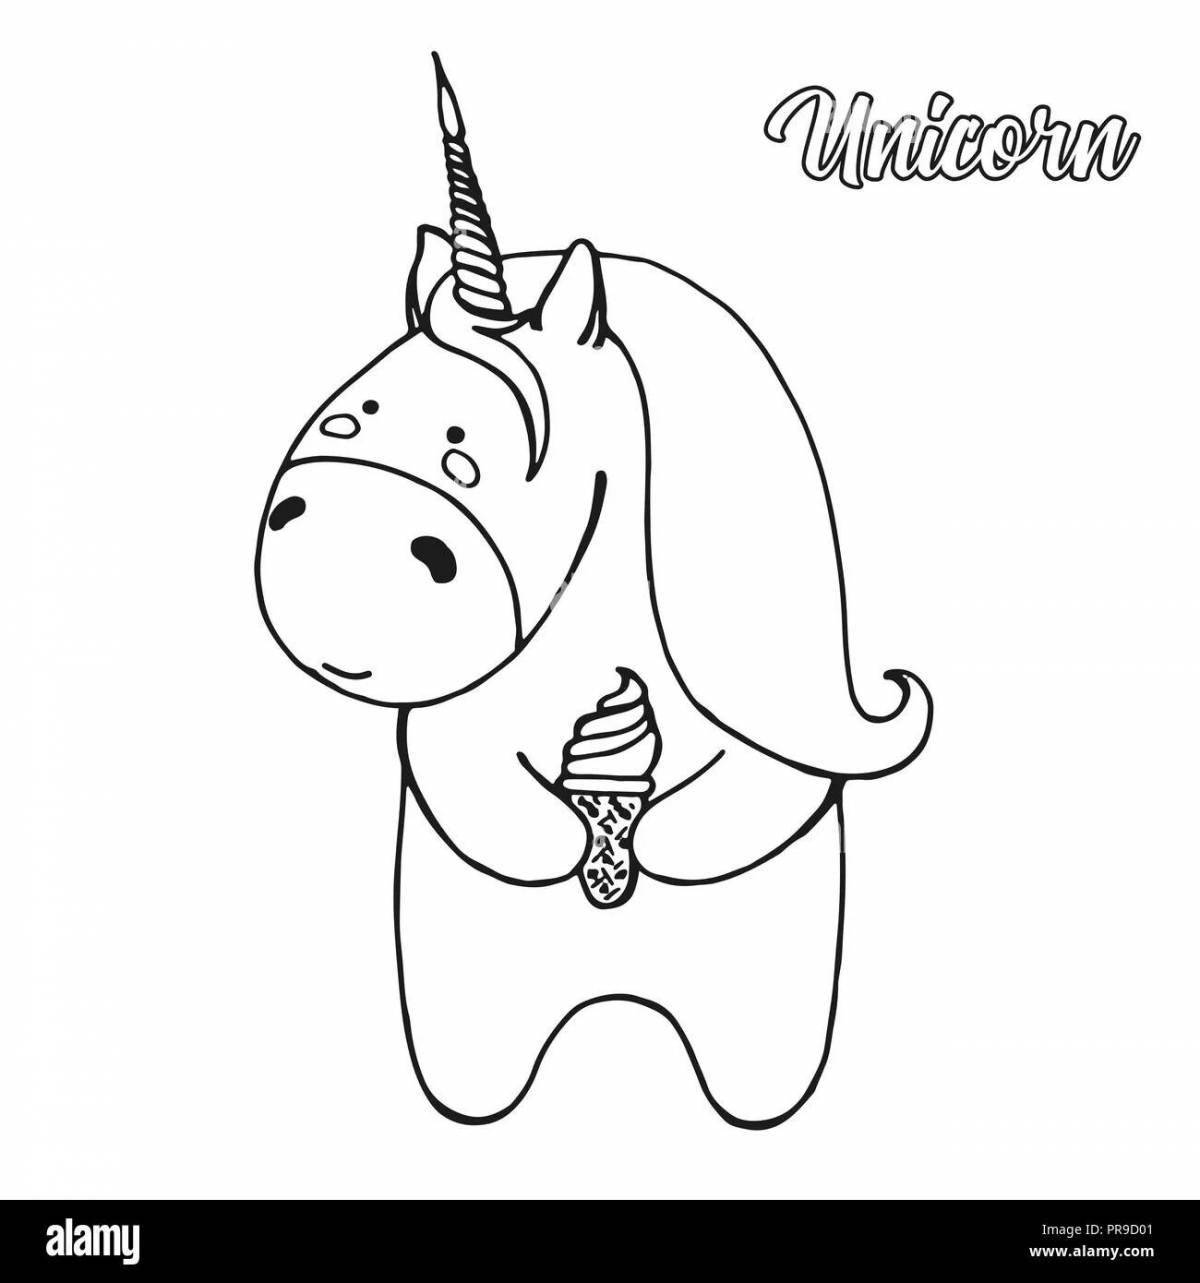 Fluffy unicorn ice cream coloring book